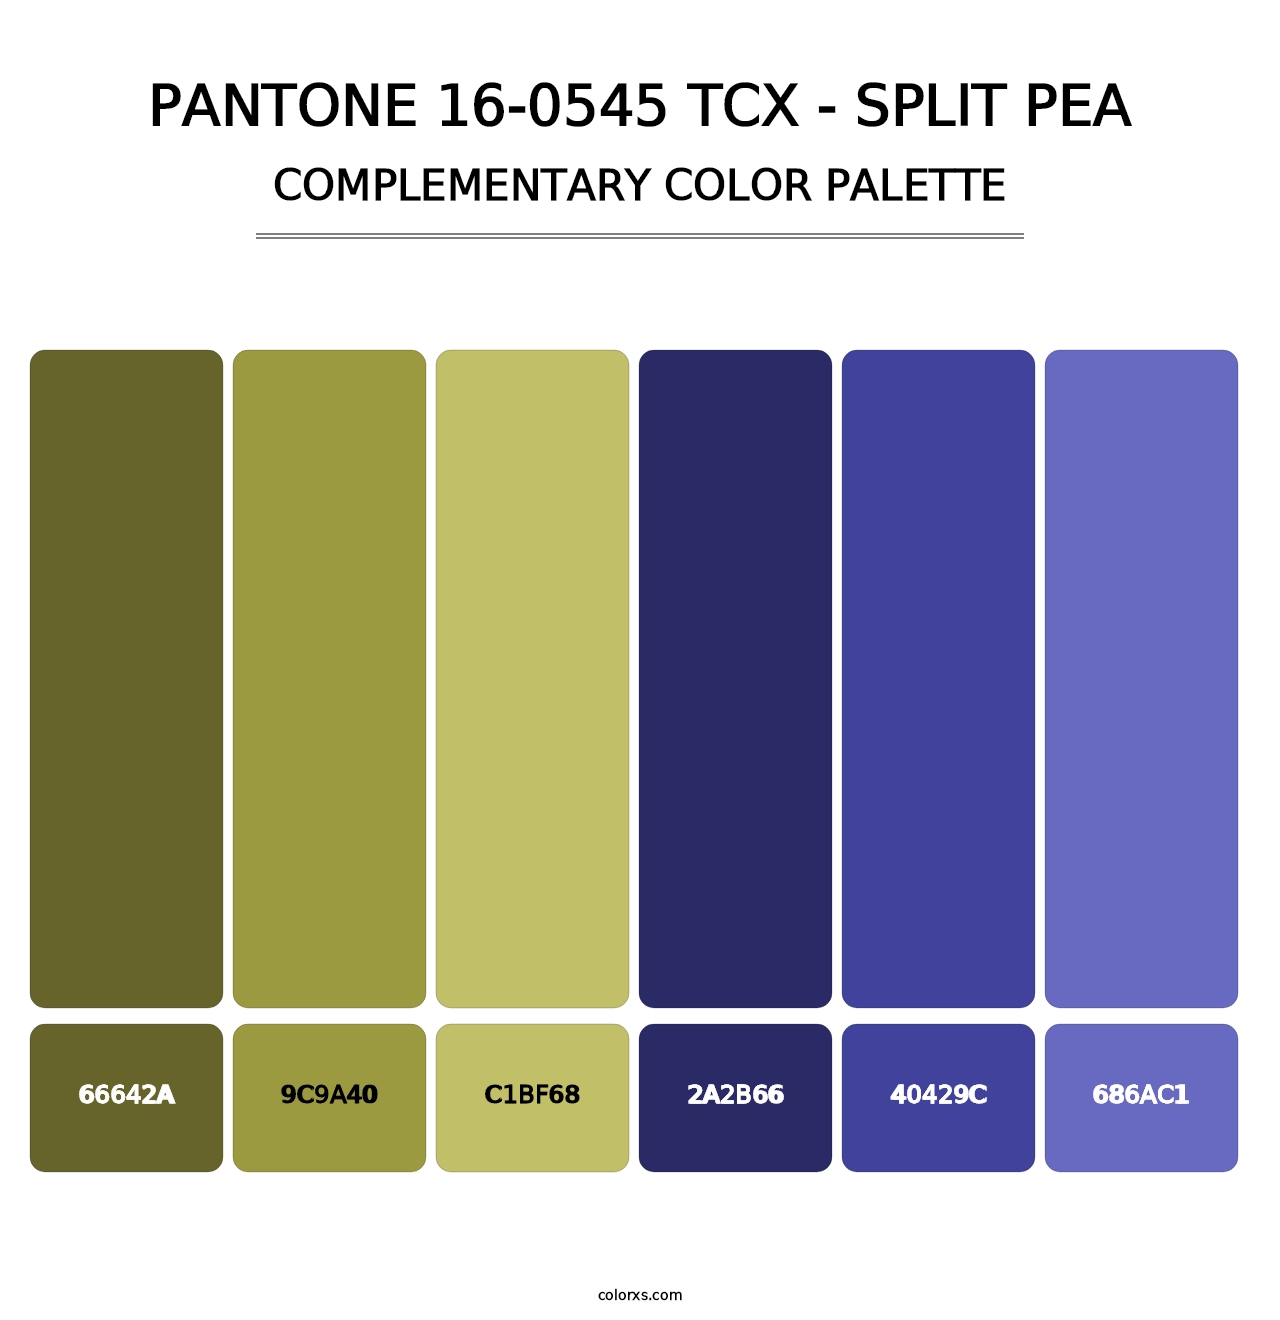 PANTONE 16-0545 TCX - Split Pea - Complementary Color Palette